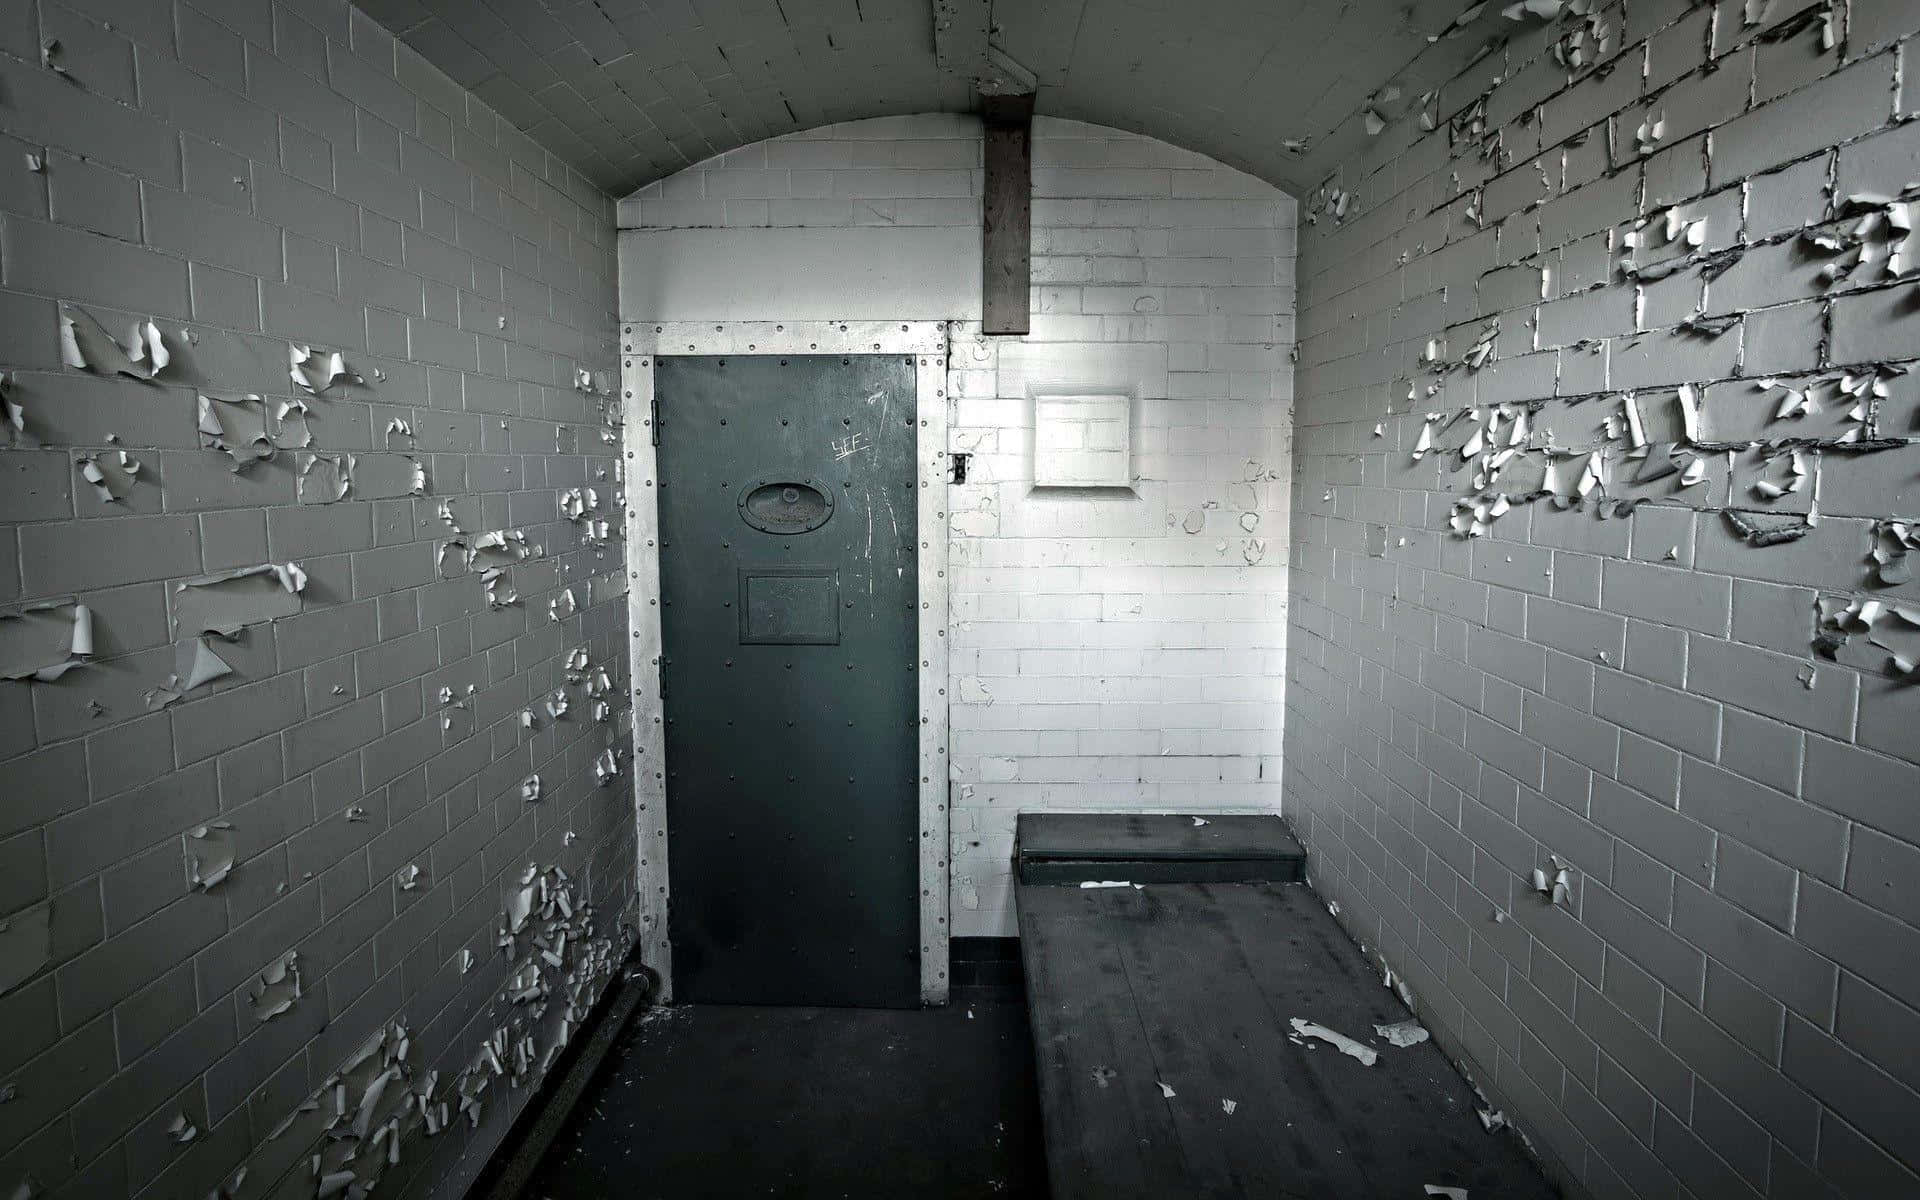 Einsamkeitin Einzelhaft Im Gefängnis